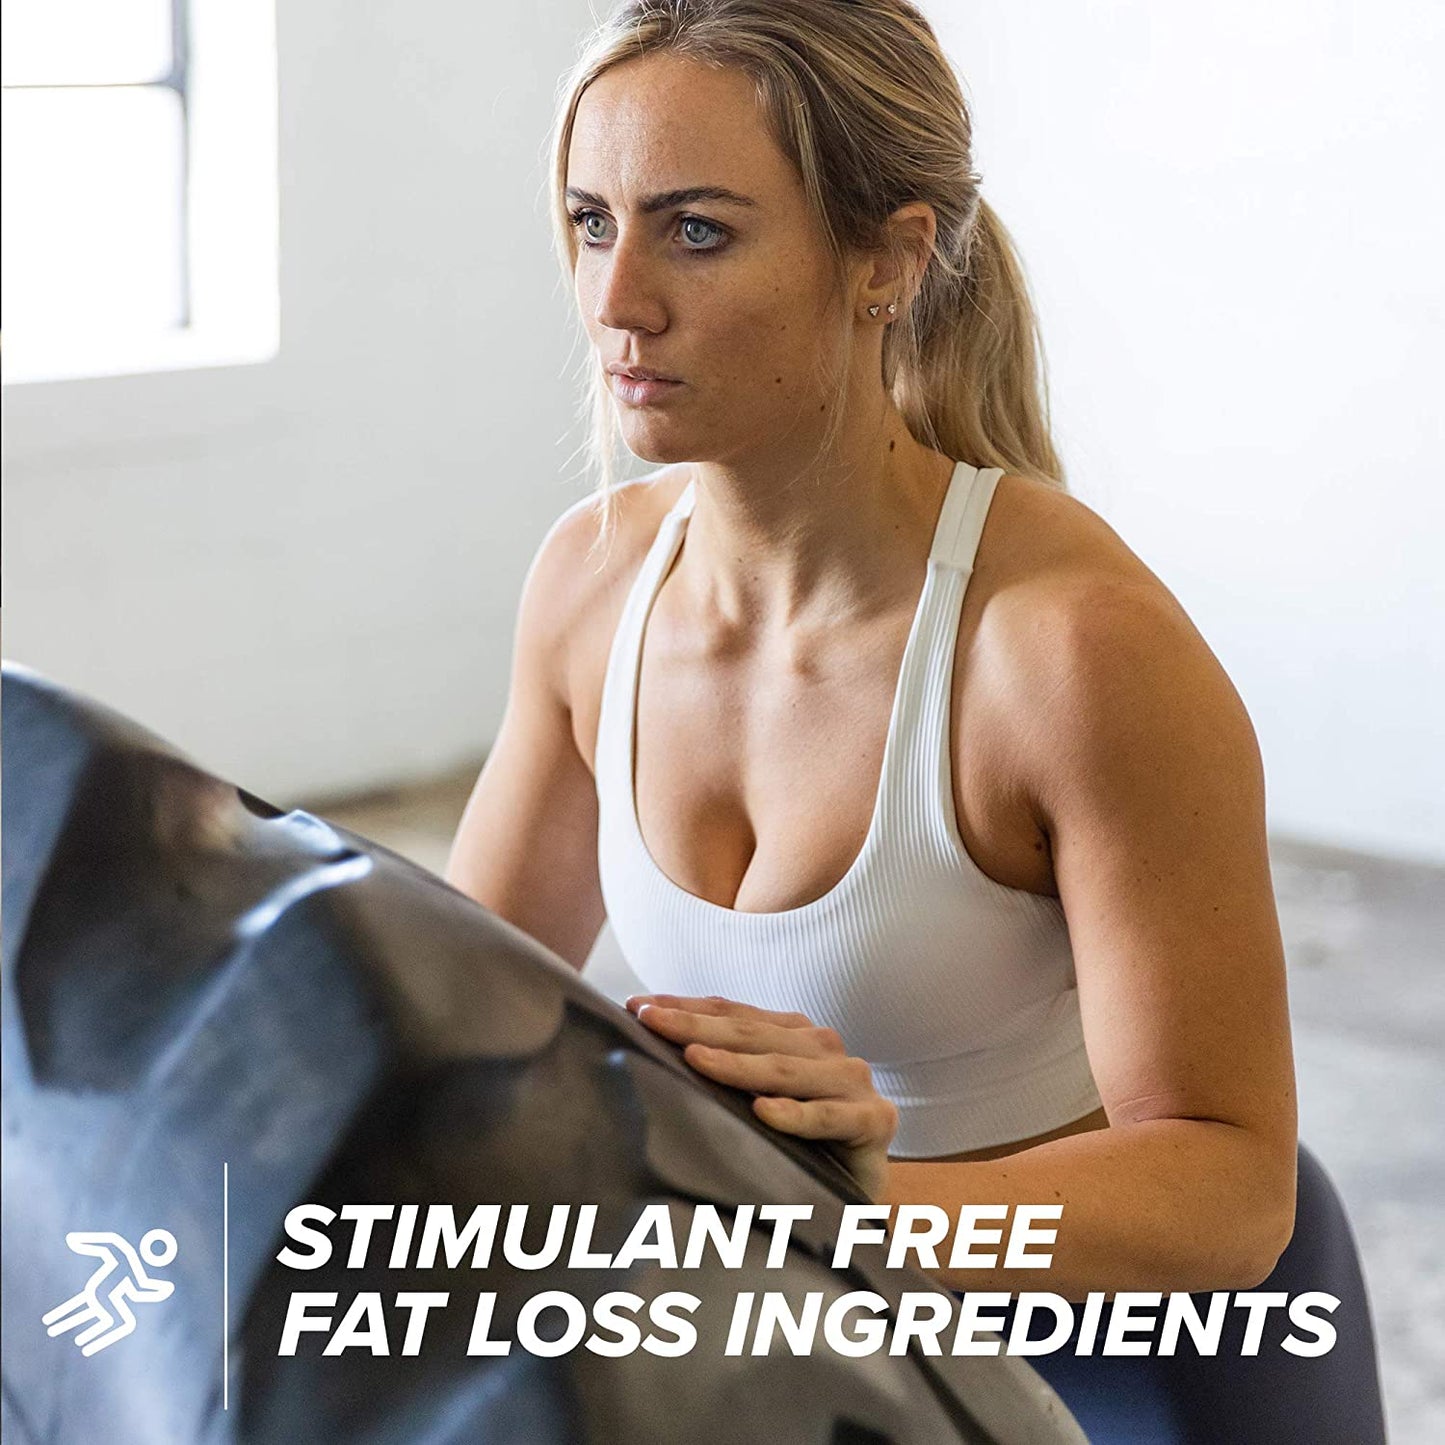 clk stim free fat burner - stim free fat loss ingredients